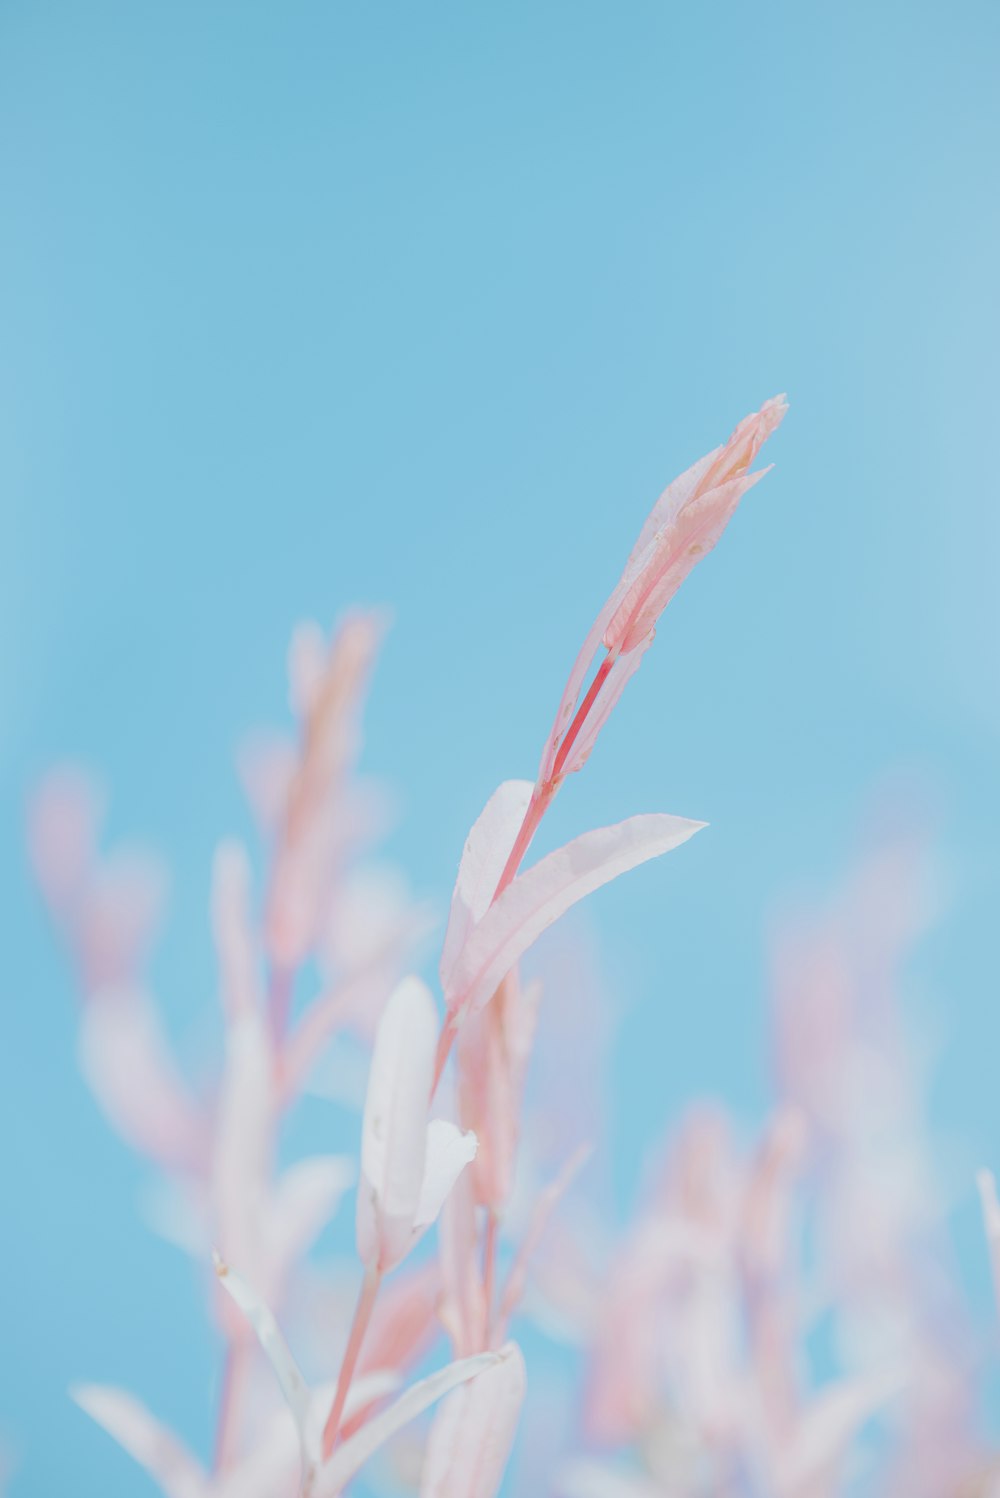 ピンクの花を咲かせる植物のぼやけた写真